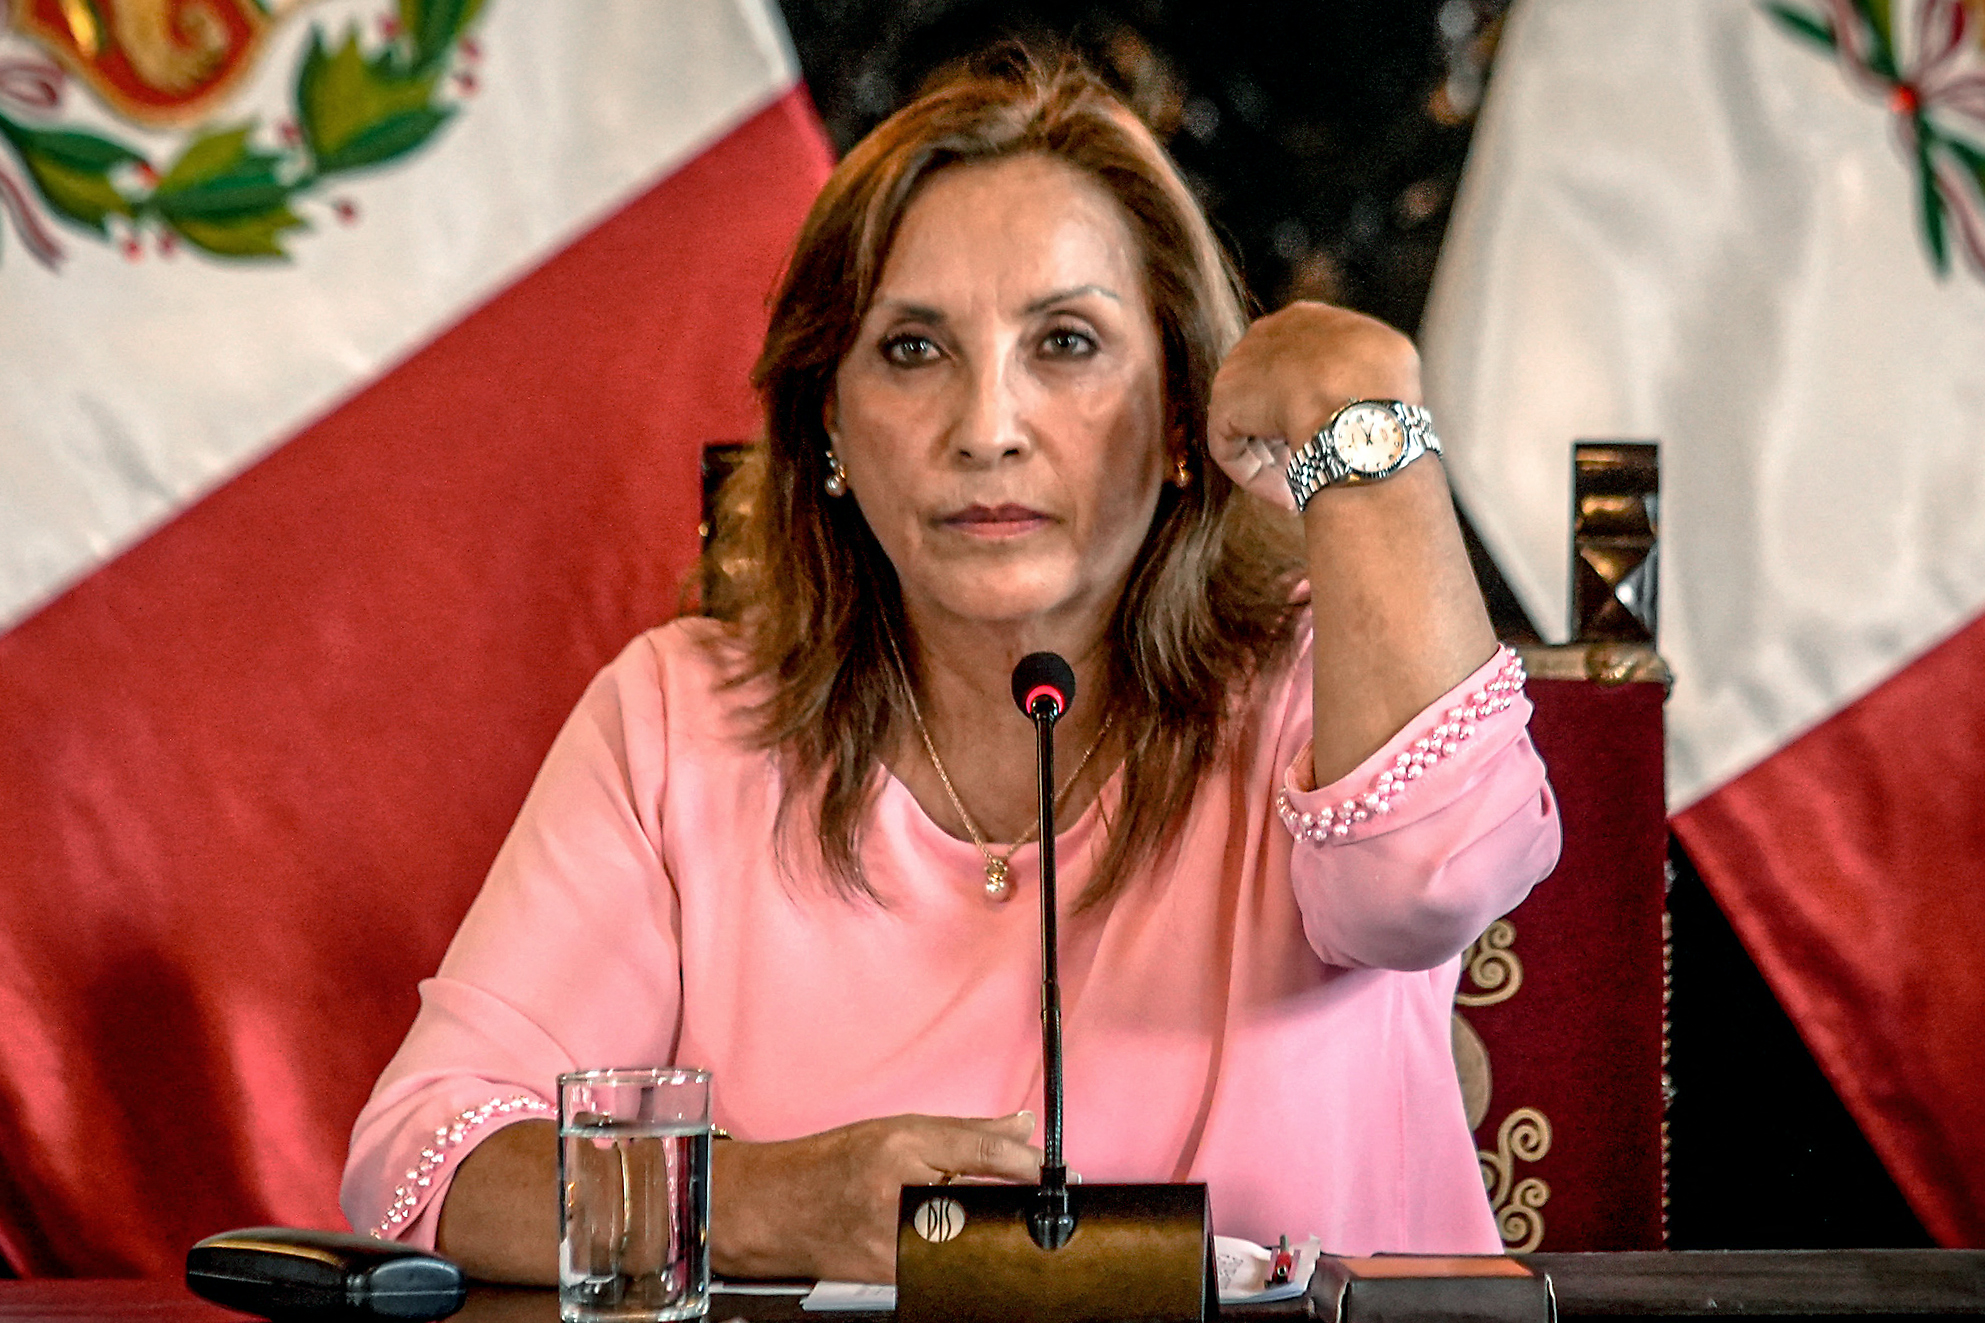 Peru's president accused of bribery in Rolexgate scandal